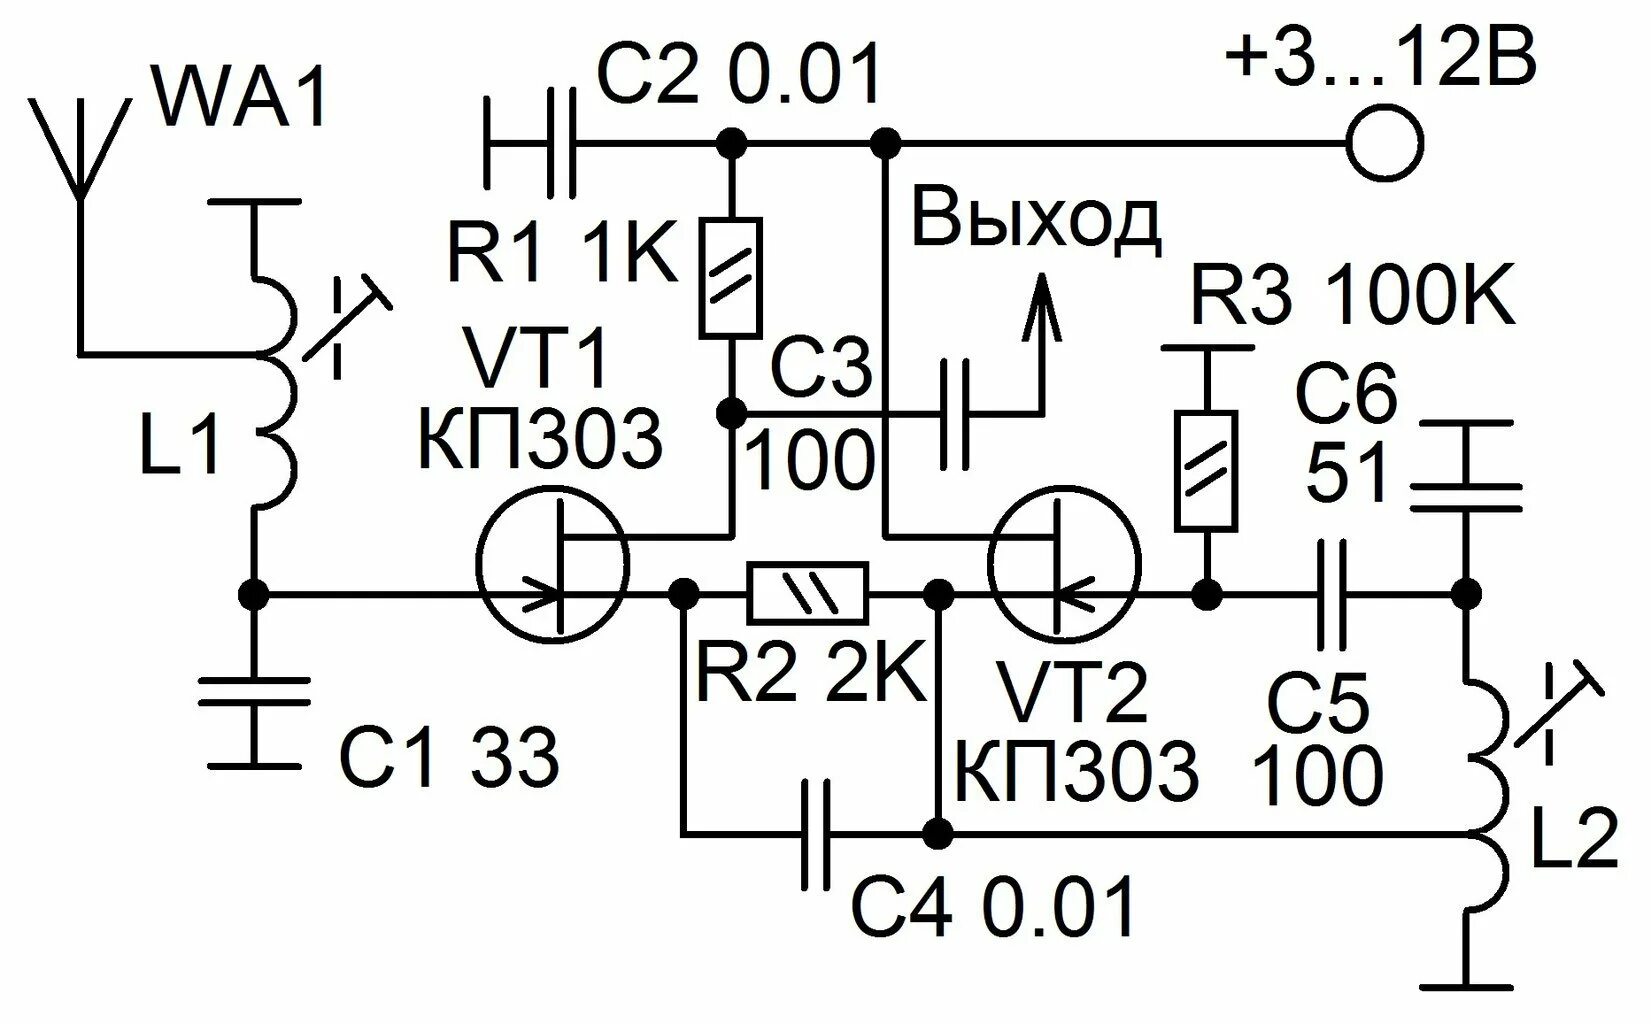 Схема УКВ 88-108мгц приемника на транзисторах. Fm радиоприемник на транзисторах 88 108 МГЦ. Схема приемника прямого усиления на 27 МГЦ. Схема конвертера УКВ fm на транзисторах. Укв прием